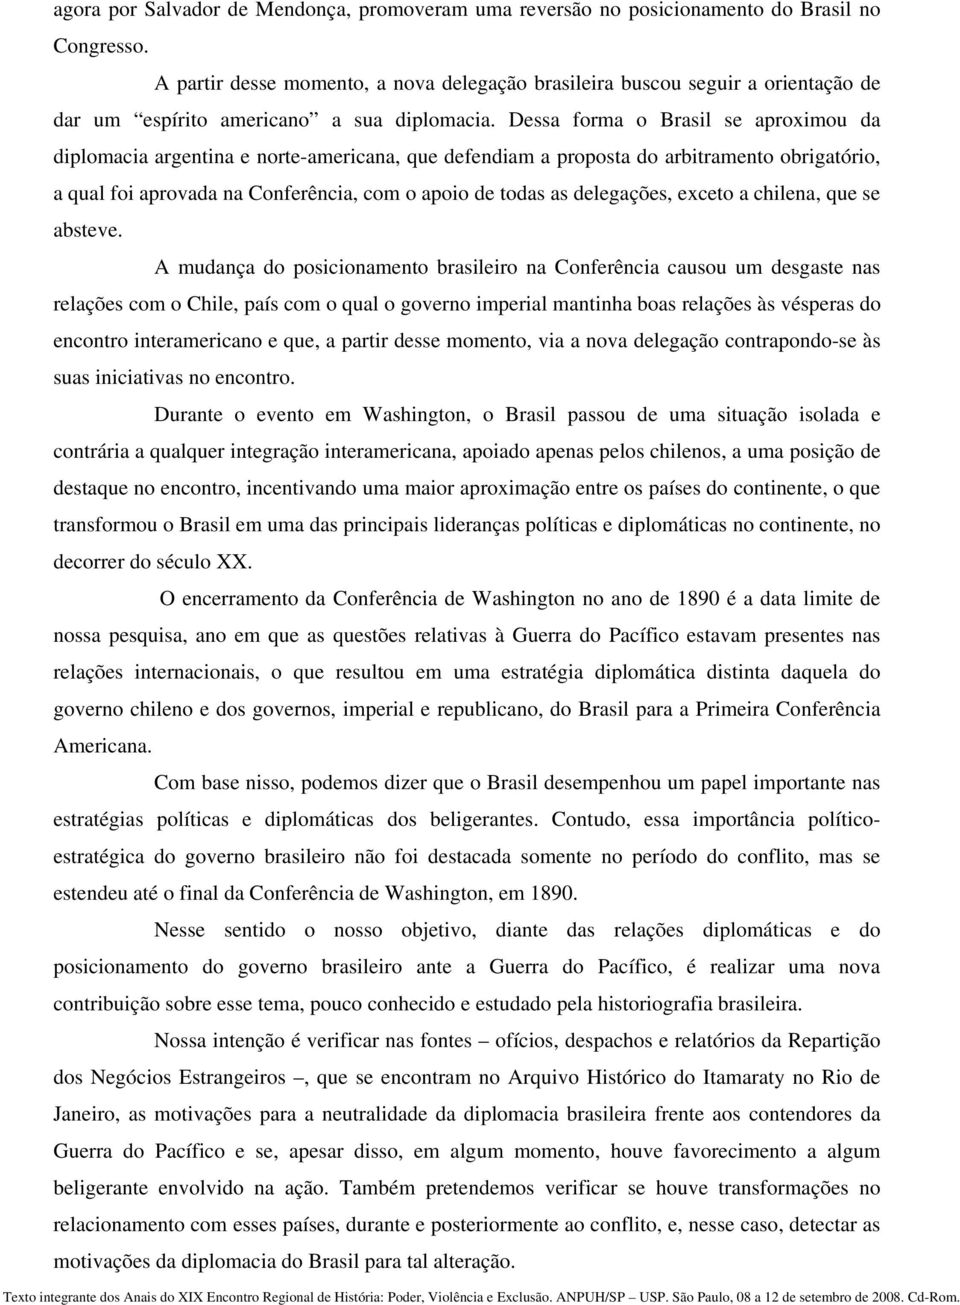 Dessa forma o Brasil se aproximou da diplomacia argentina e norte-americana, que defendiam a proposta do arbitramento obrigatório, a qual foi aprovada na Conferência, com o apoio de todas as